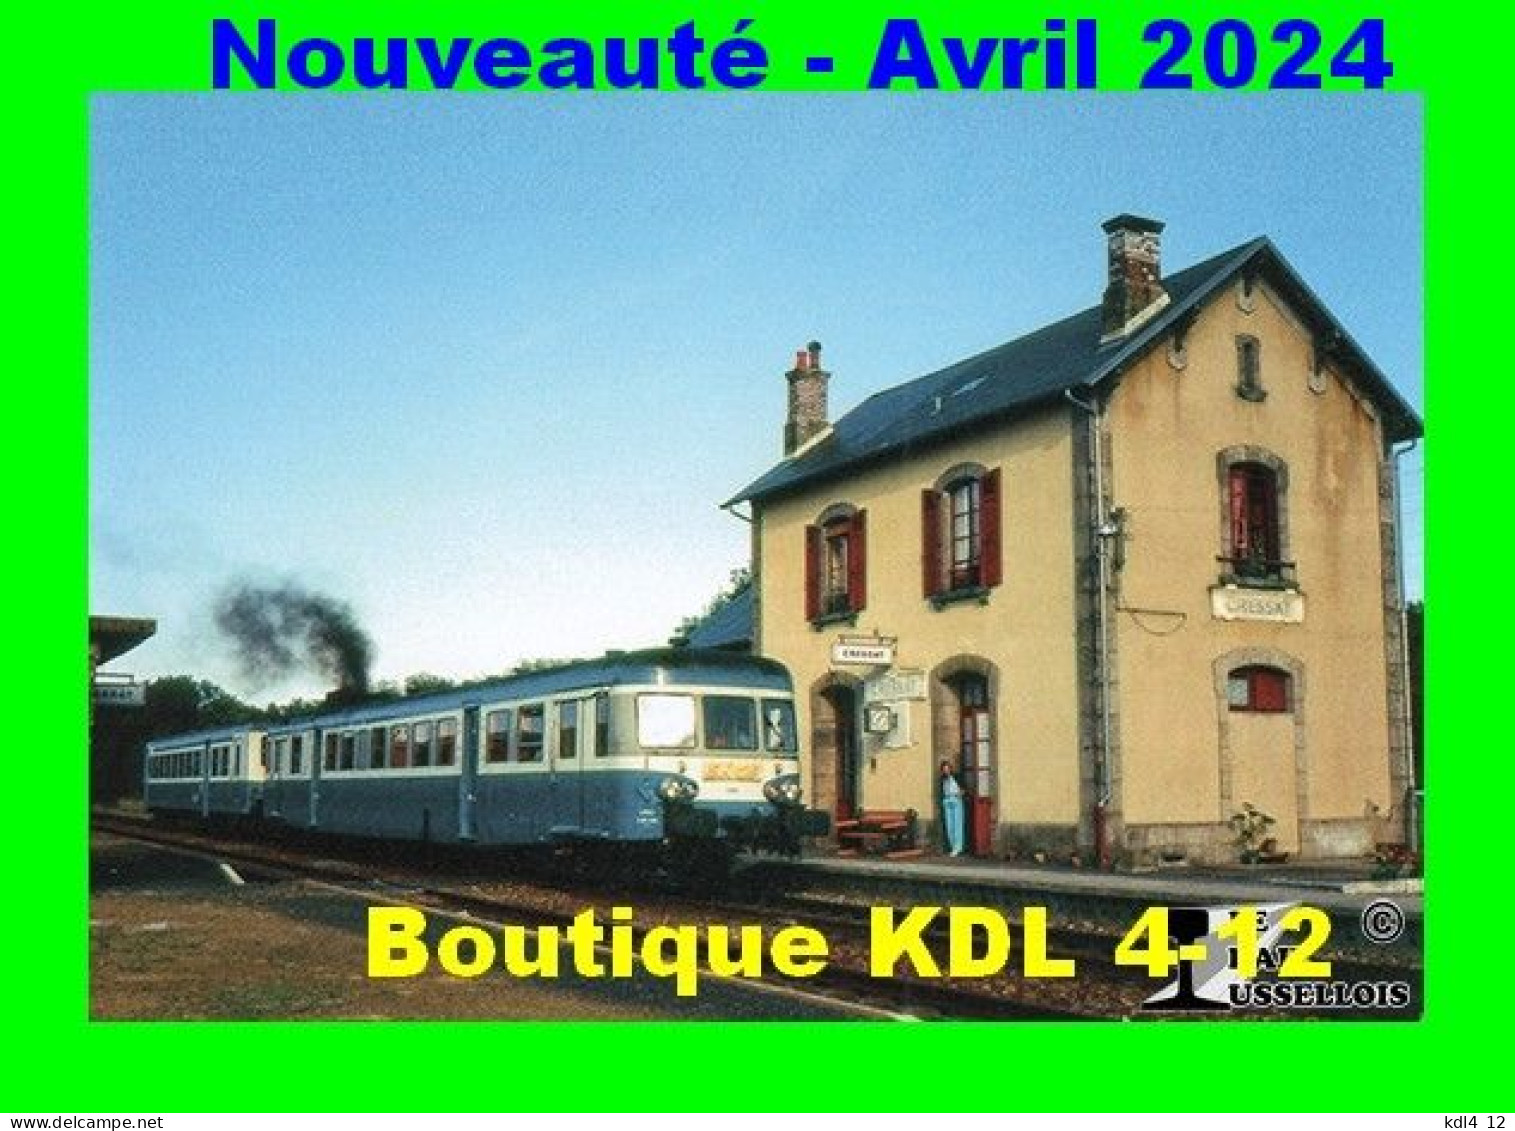 RU 2160 - Autorail X 2883 En Gare - CRESSAT - Creuse - SNCF - Stations - Zonder Treinen